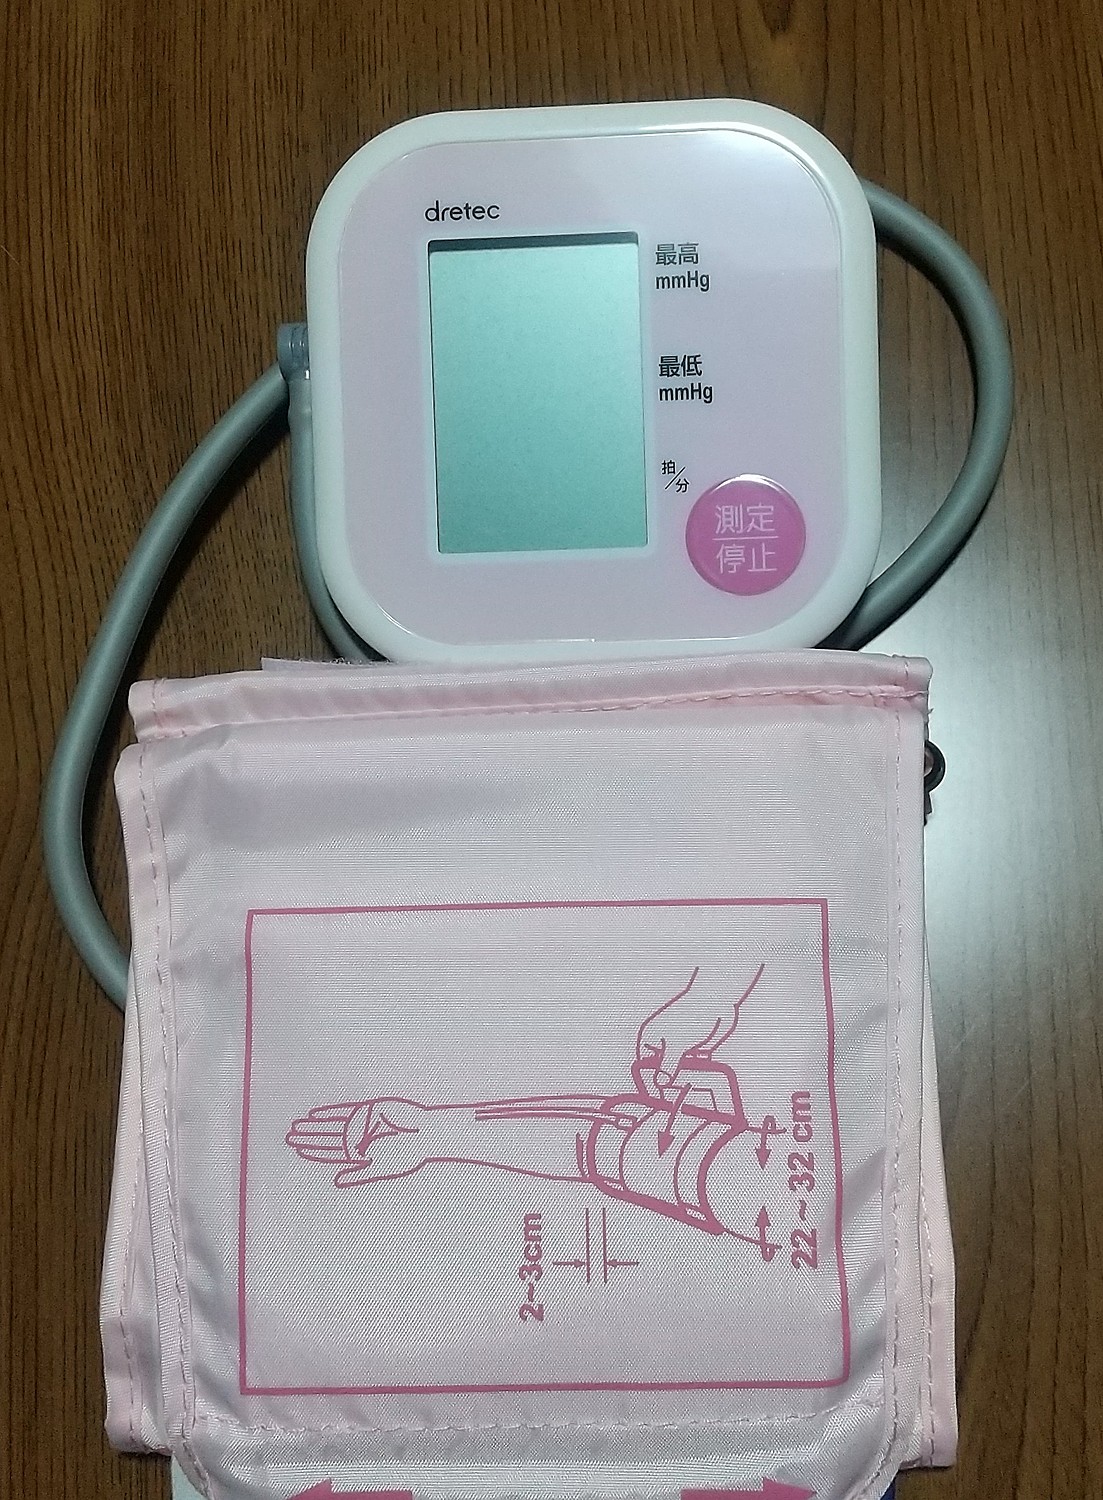 885円 毎日がバーゲンセール 血圧計 上腕式 血圧測定器 コンパクトタイプ ドリテック デジタル自動血圧計 簡単操作 DRETEC ホワイト BM-201WT